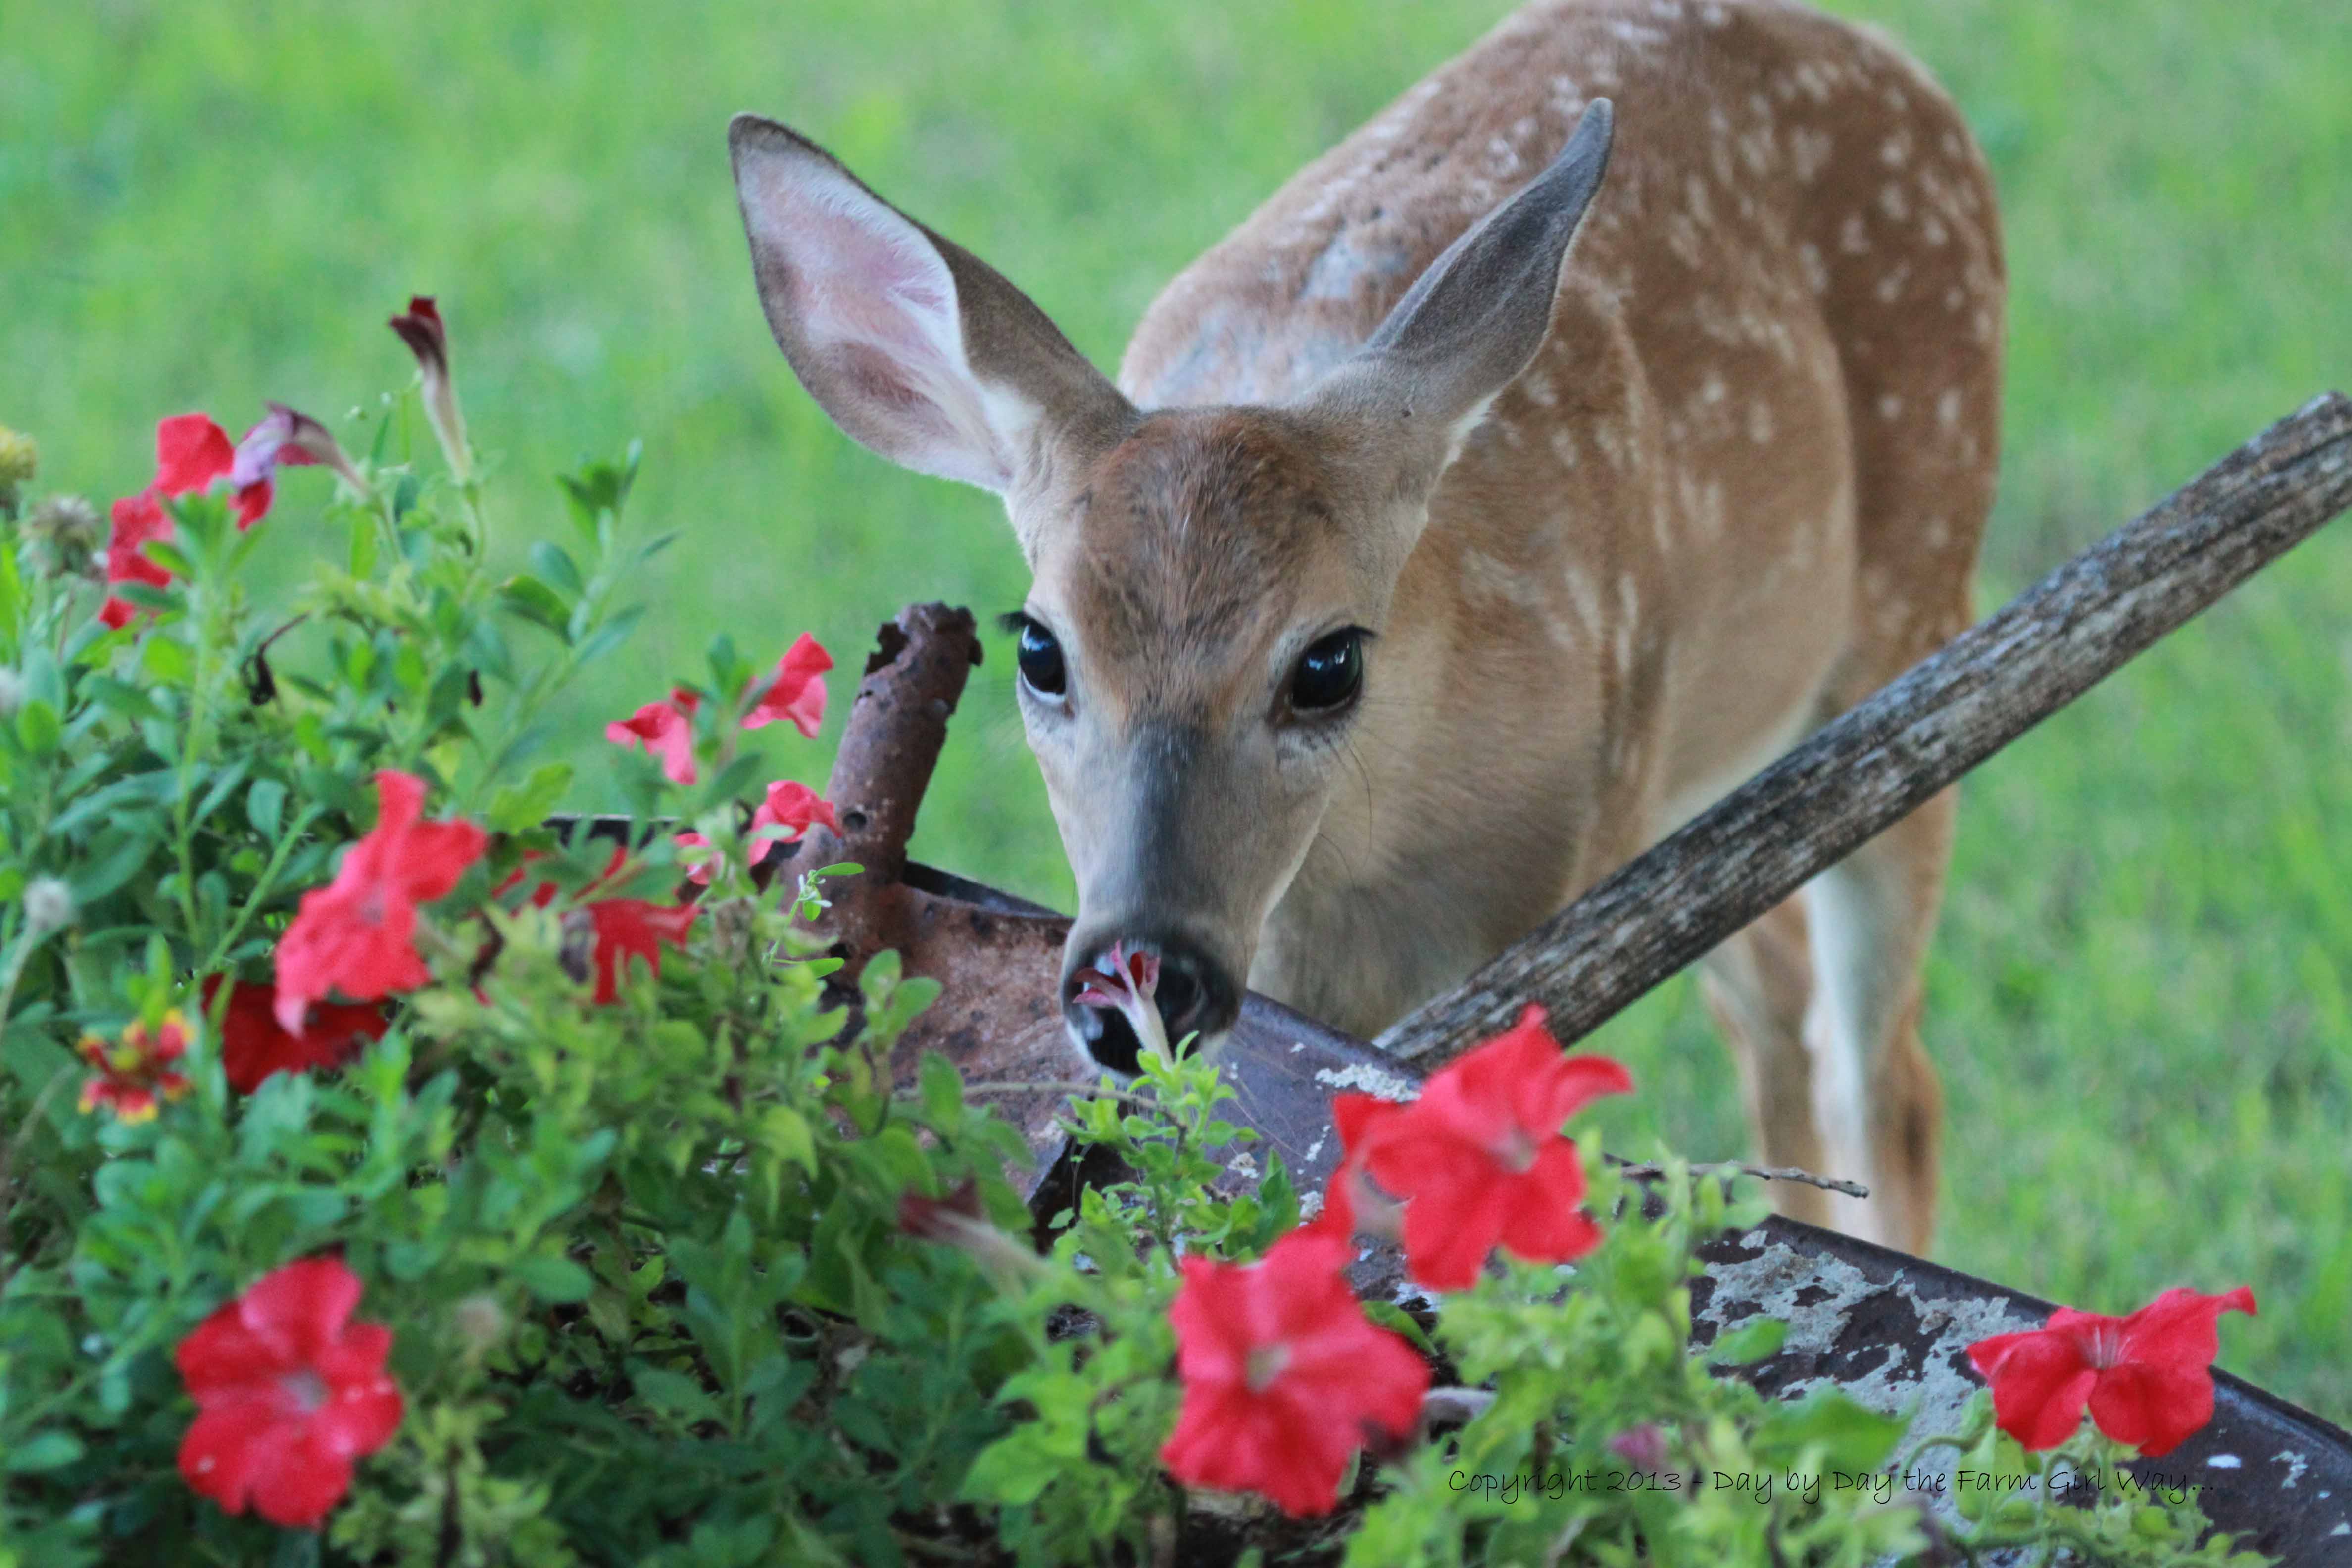 Deer eating rose bushes